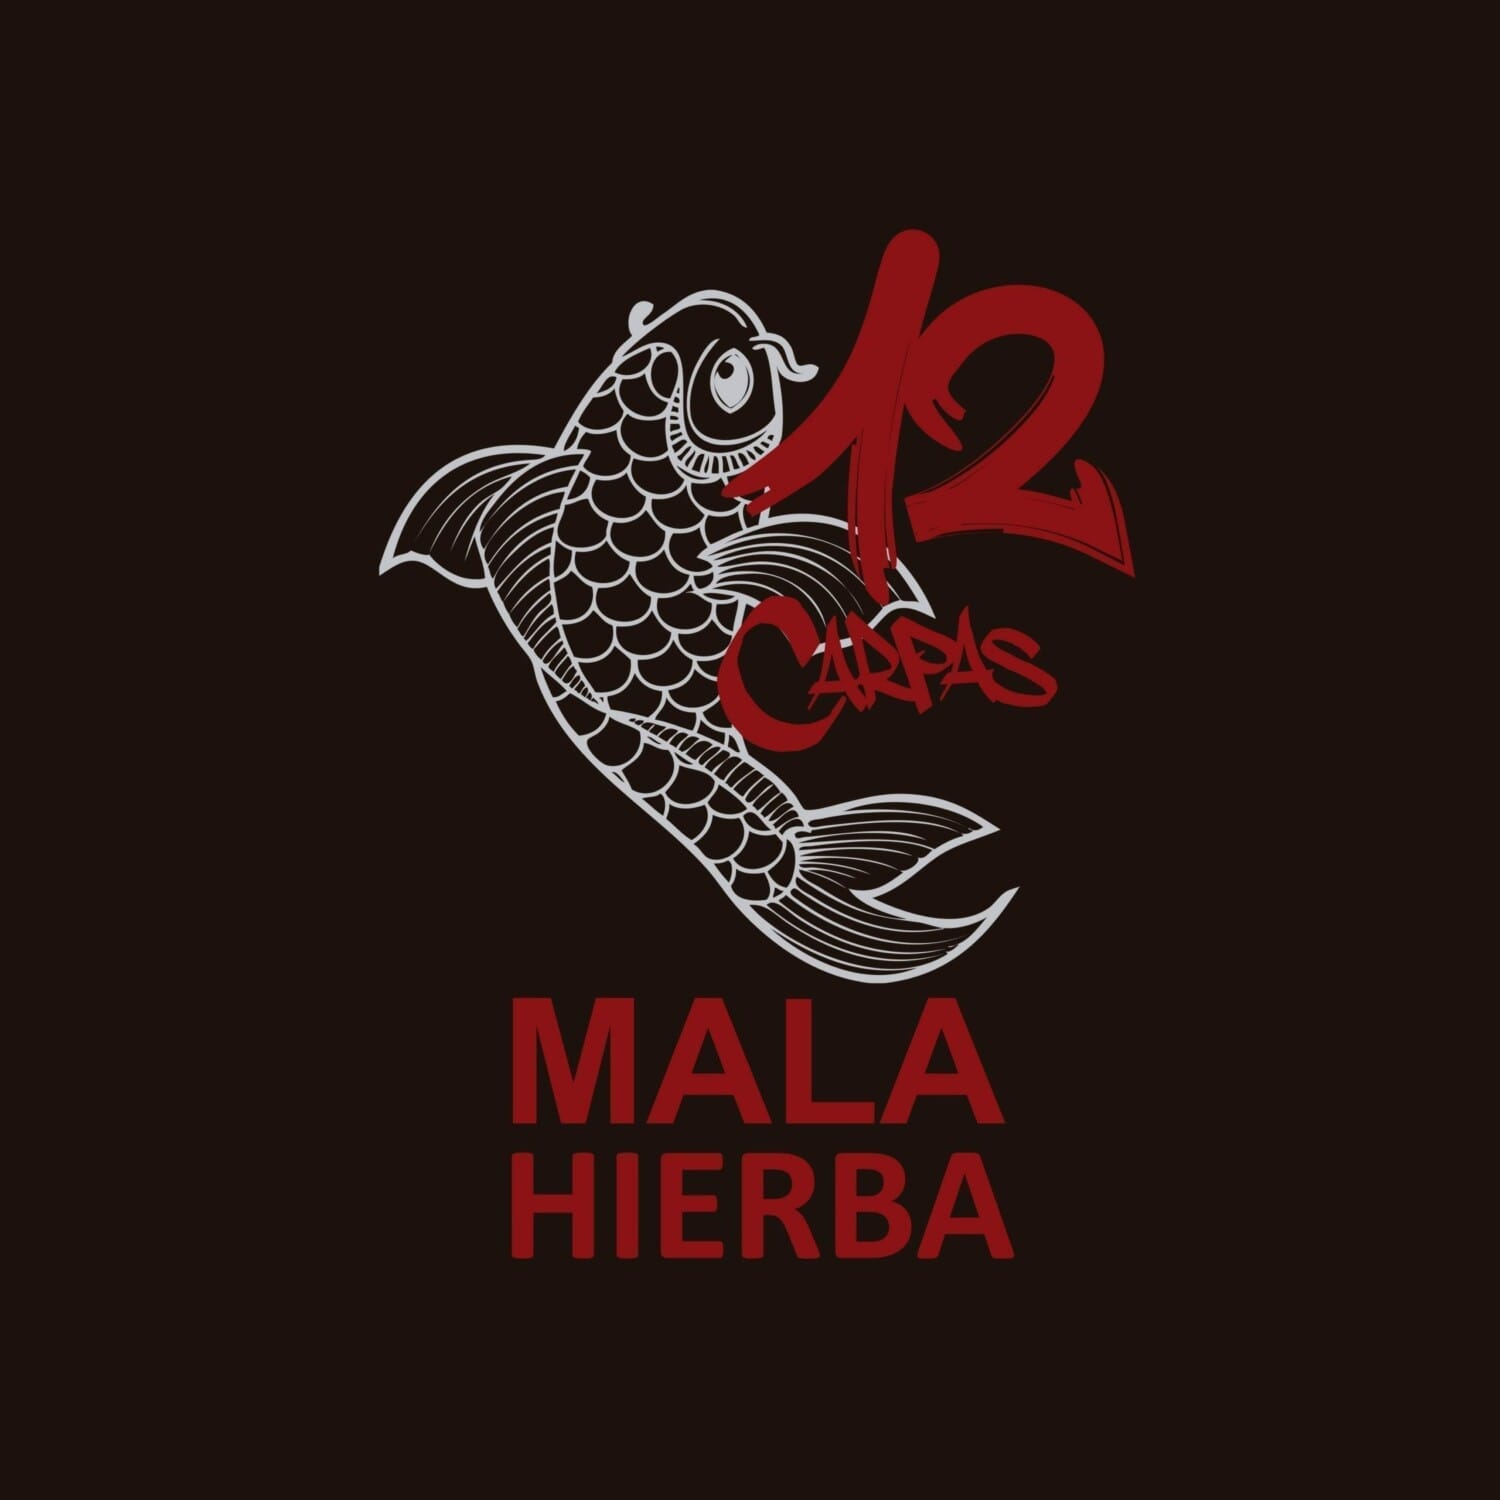 12 Carpas lanza su primer videoclip, "Mala Hierba"